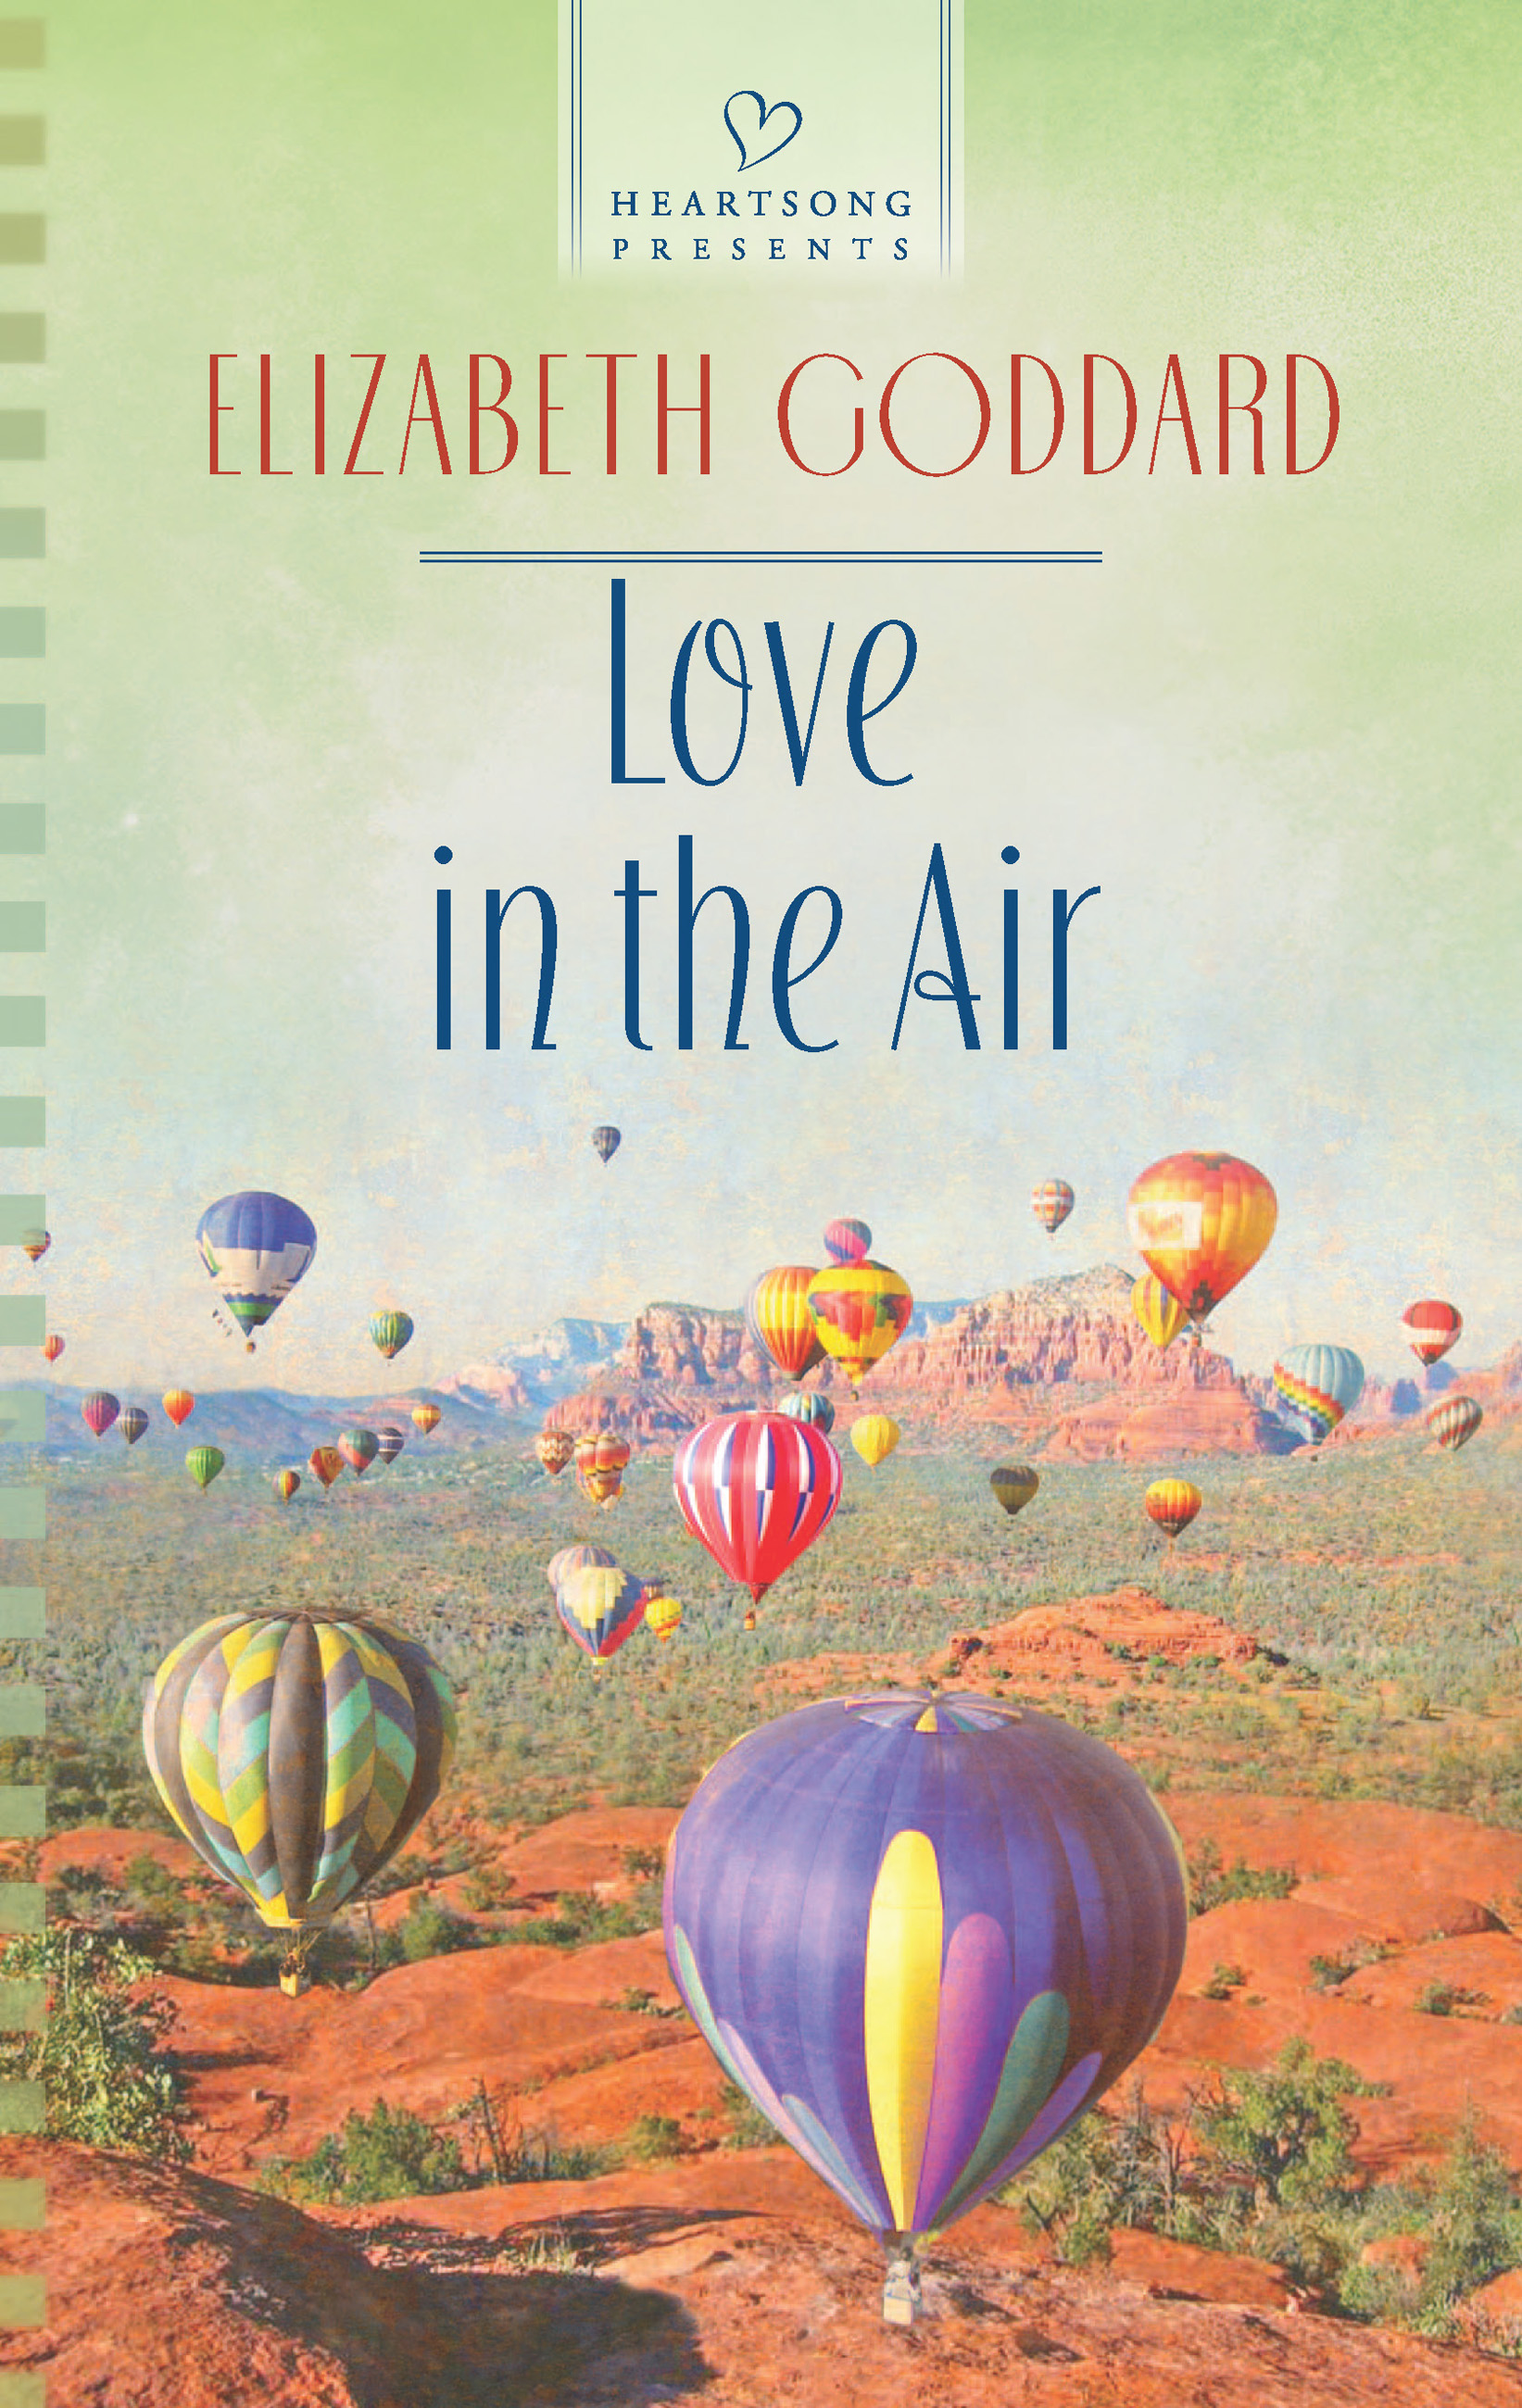 Love in the Air (2013) by Elizabeth Goddard